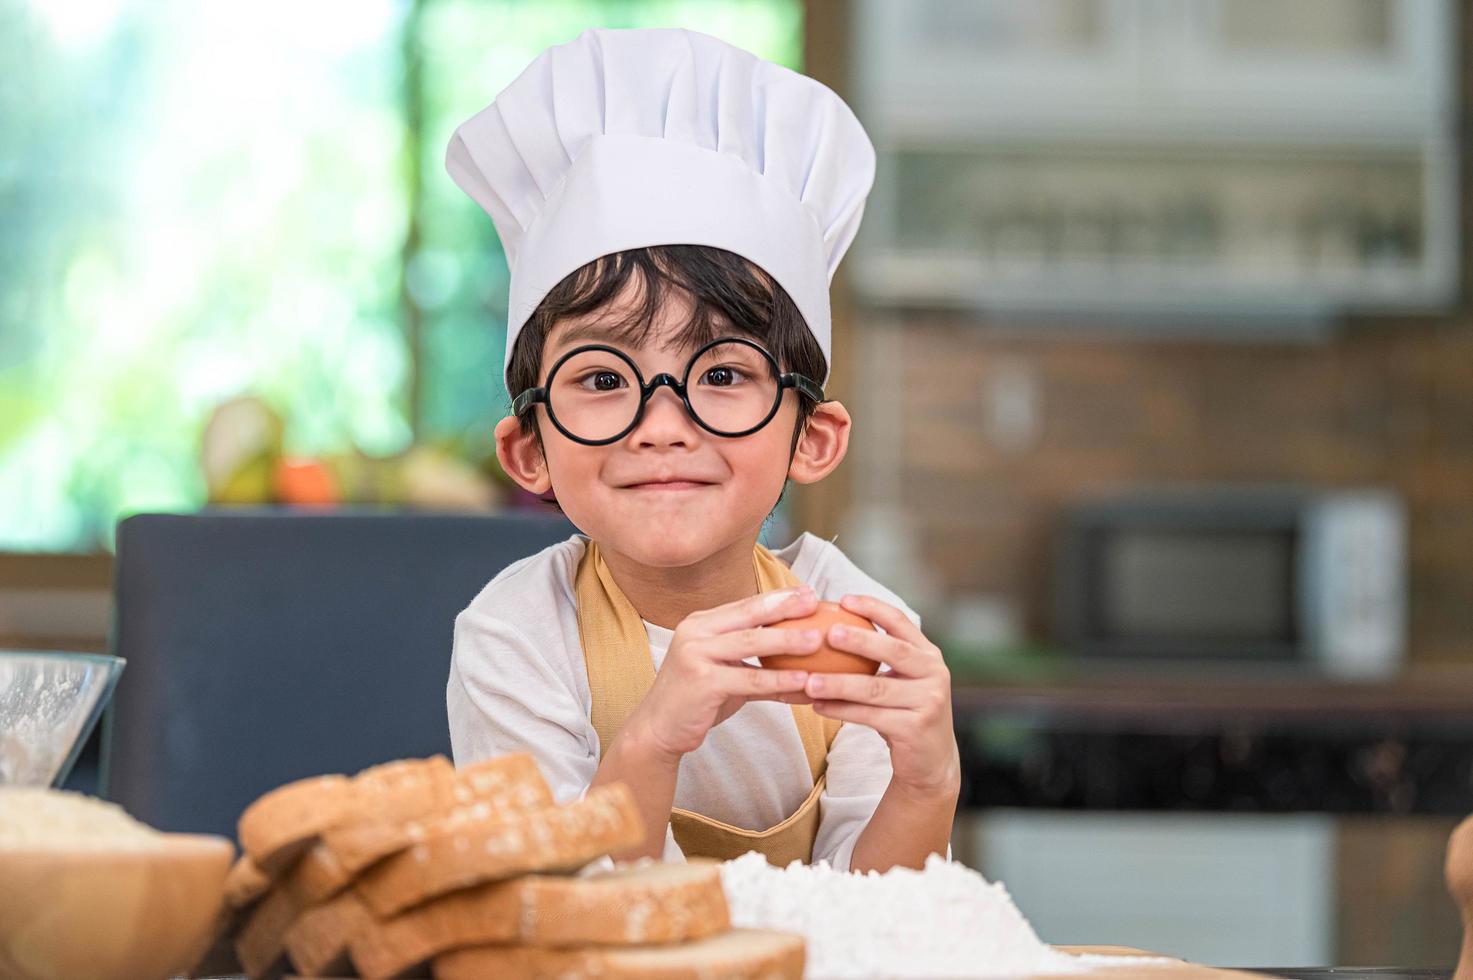 süßer kleiner asiatischer glücklicher Junge, der am Kochen interessiert ist foto